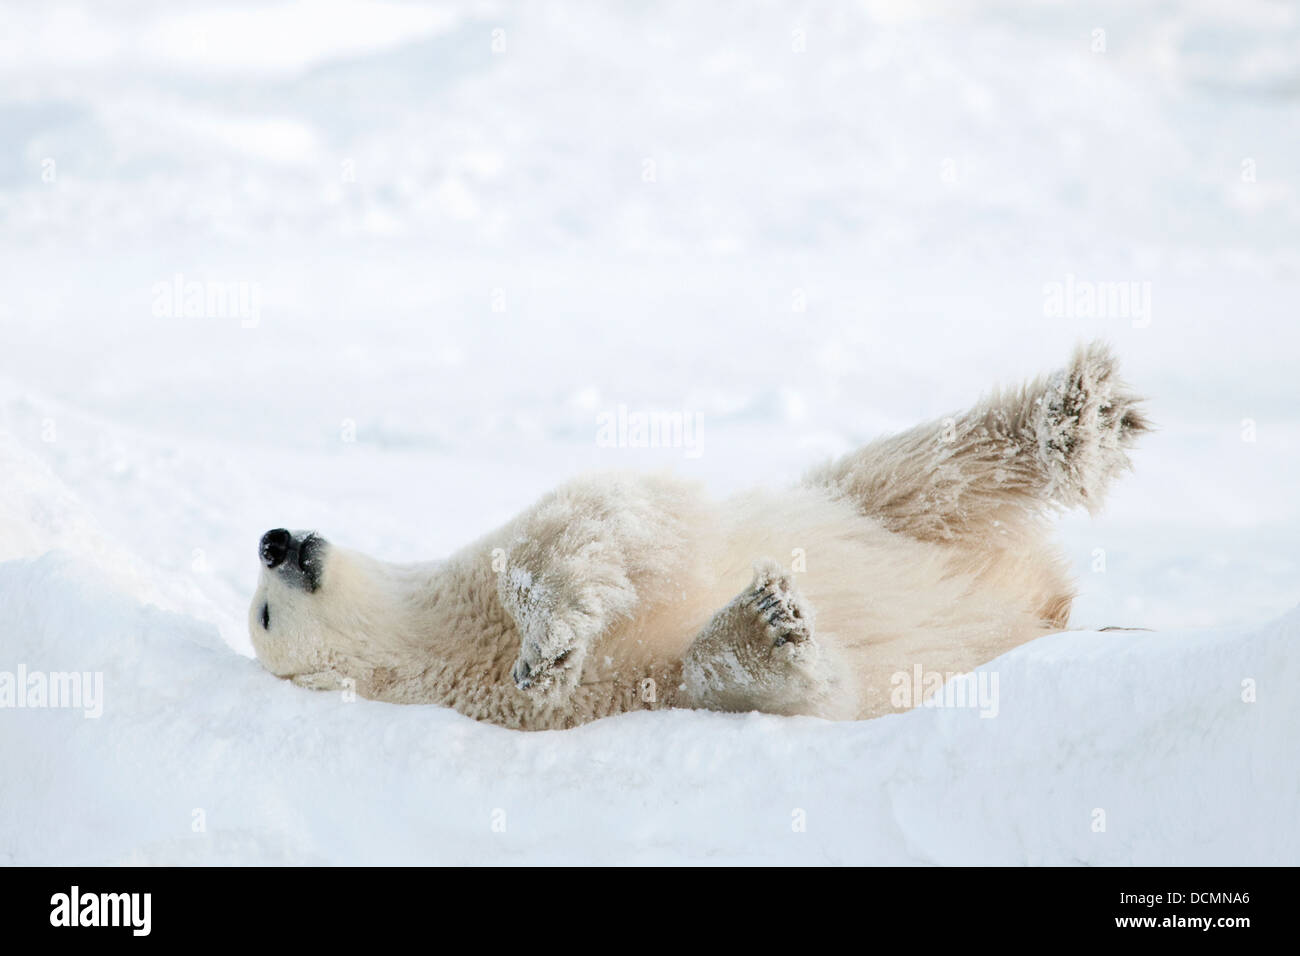 El oso polar (Ursus maritimus) jugando en la nieve en la banquisa, Churchill, la bahía de Hudson, Manitoba, Canadá. Foto de stock